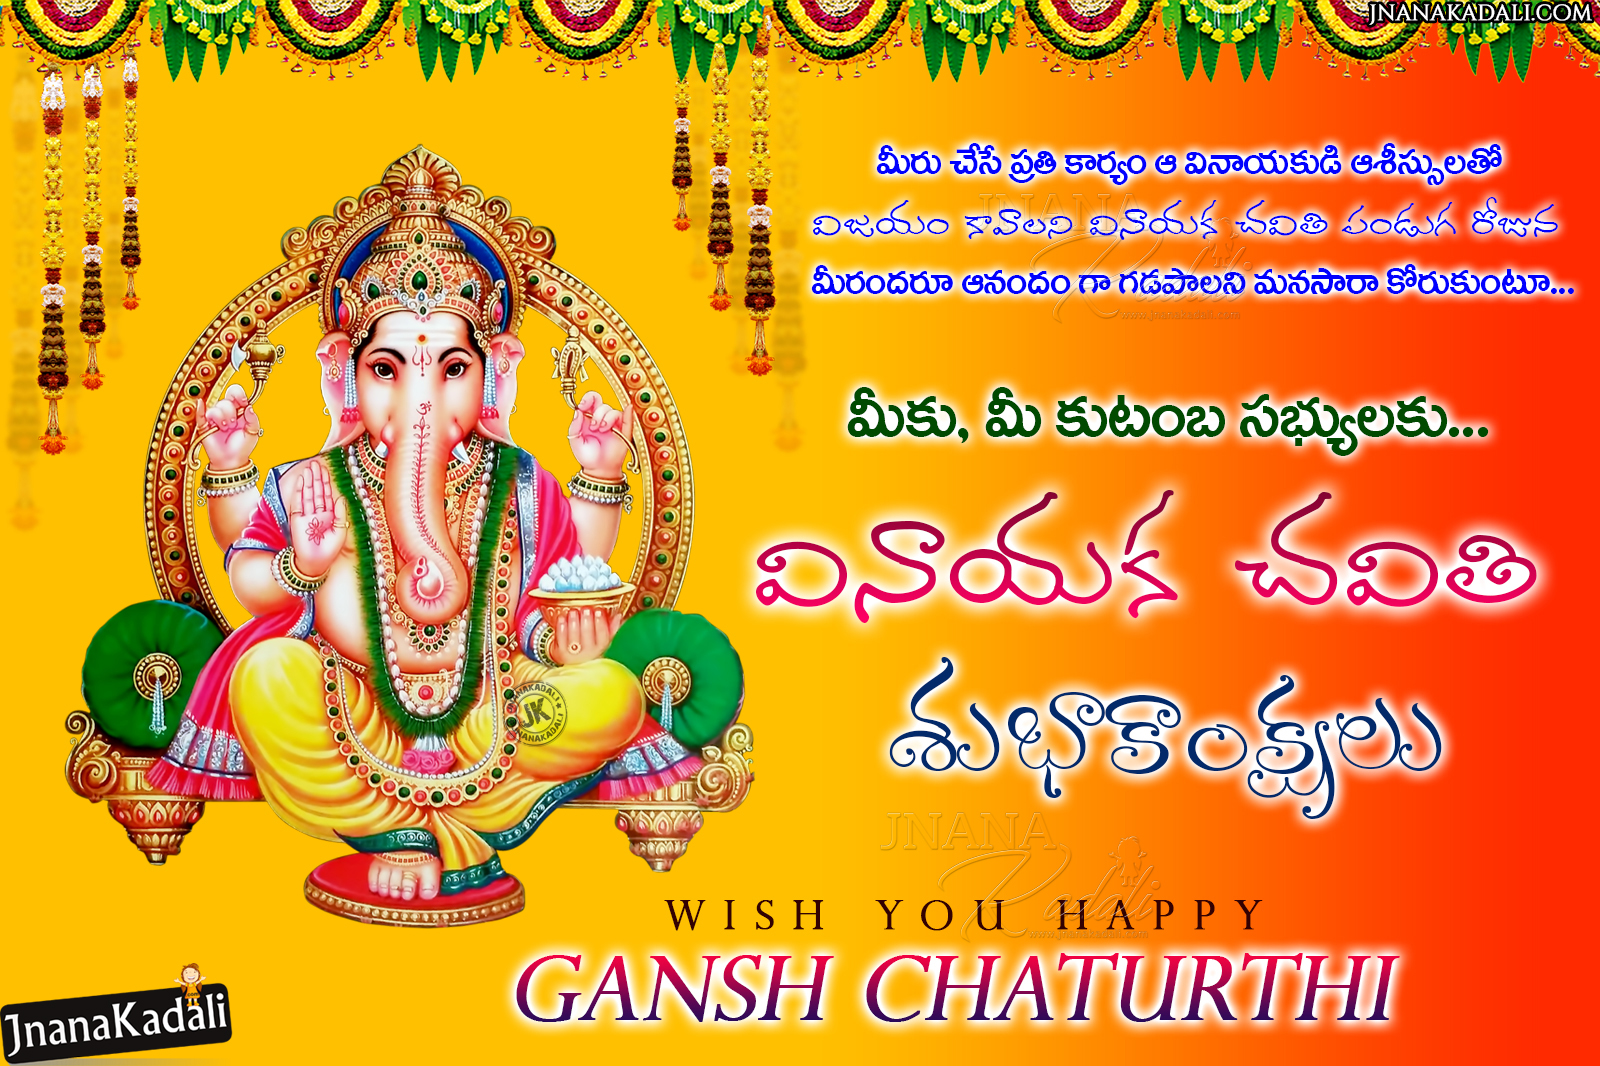 Telugu Vinayaka Chavithi Greetings wallpapers-Happy Ganesh ...